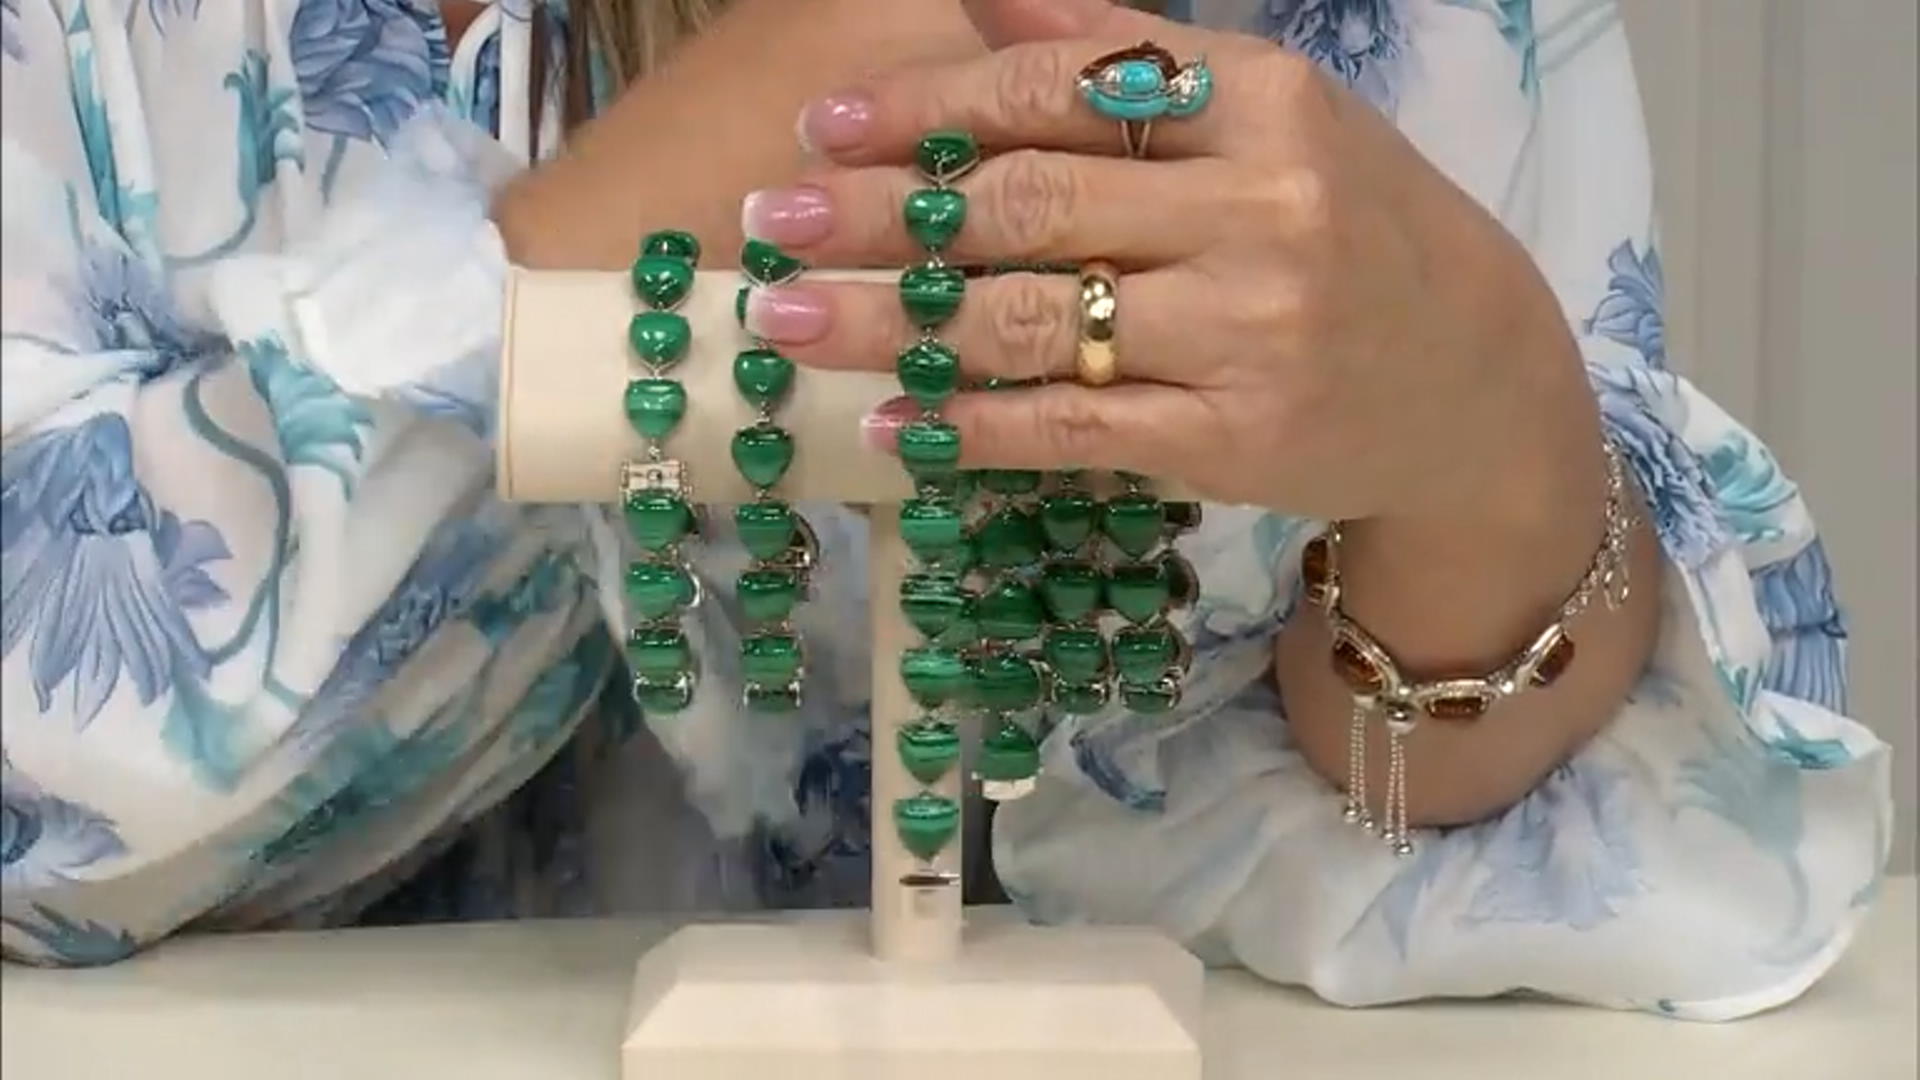 Green Malachite Sterling Silver Bracelet Video Thumbnail